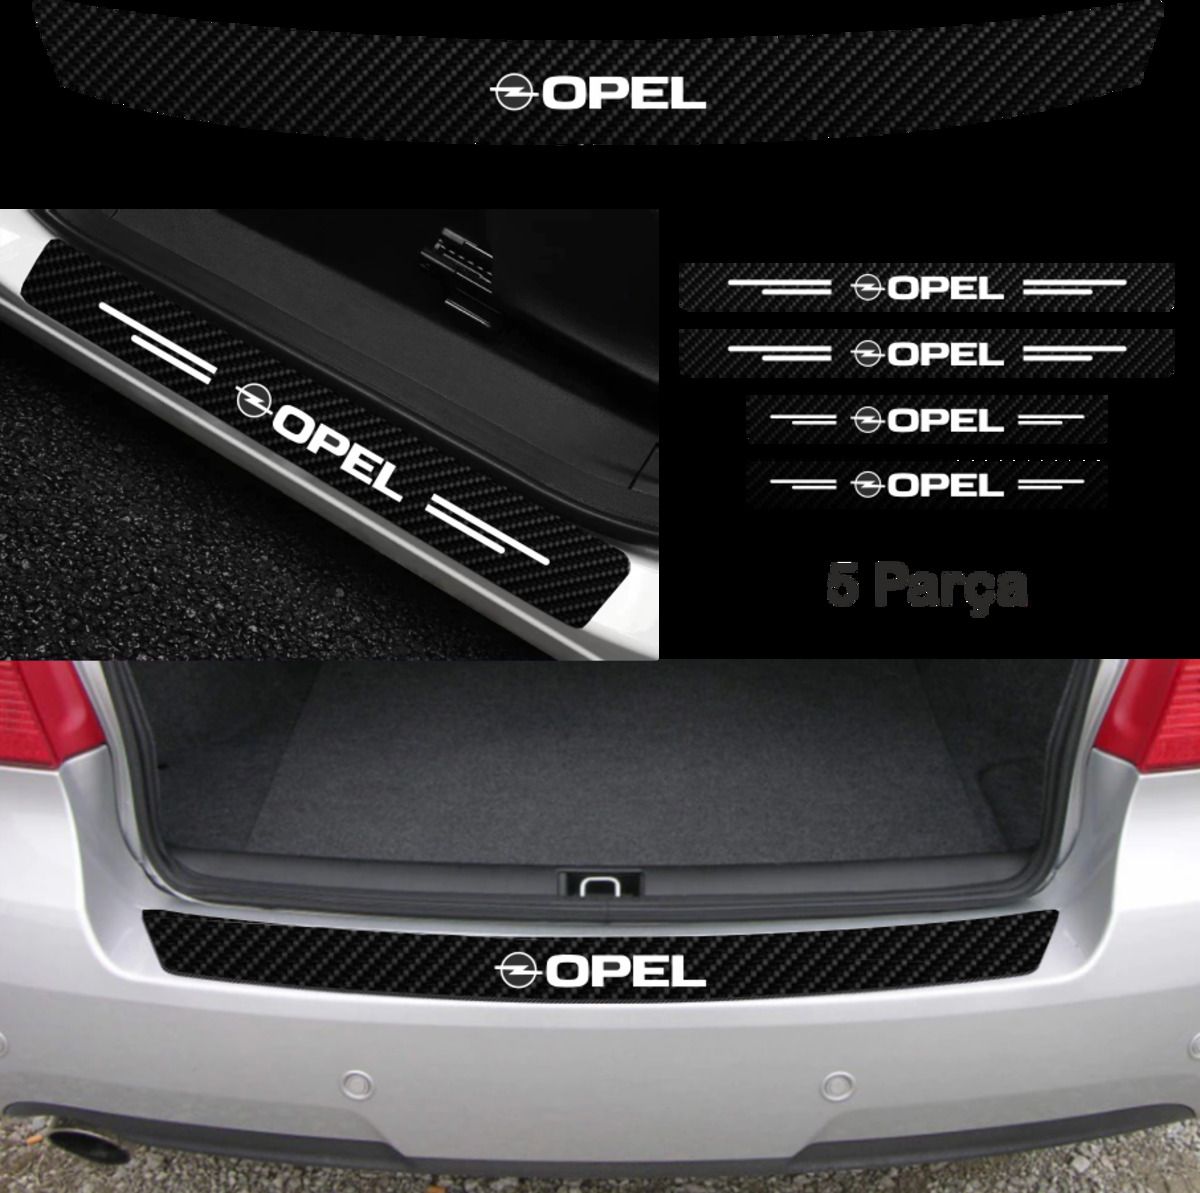 habune Opel Corsa İçin Uyumlu Aksesuar Oto Bağaj Ve Kapı Eşiği Sticker Set Karbon